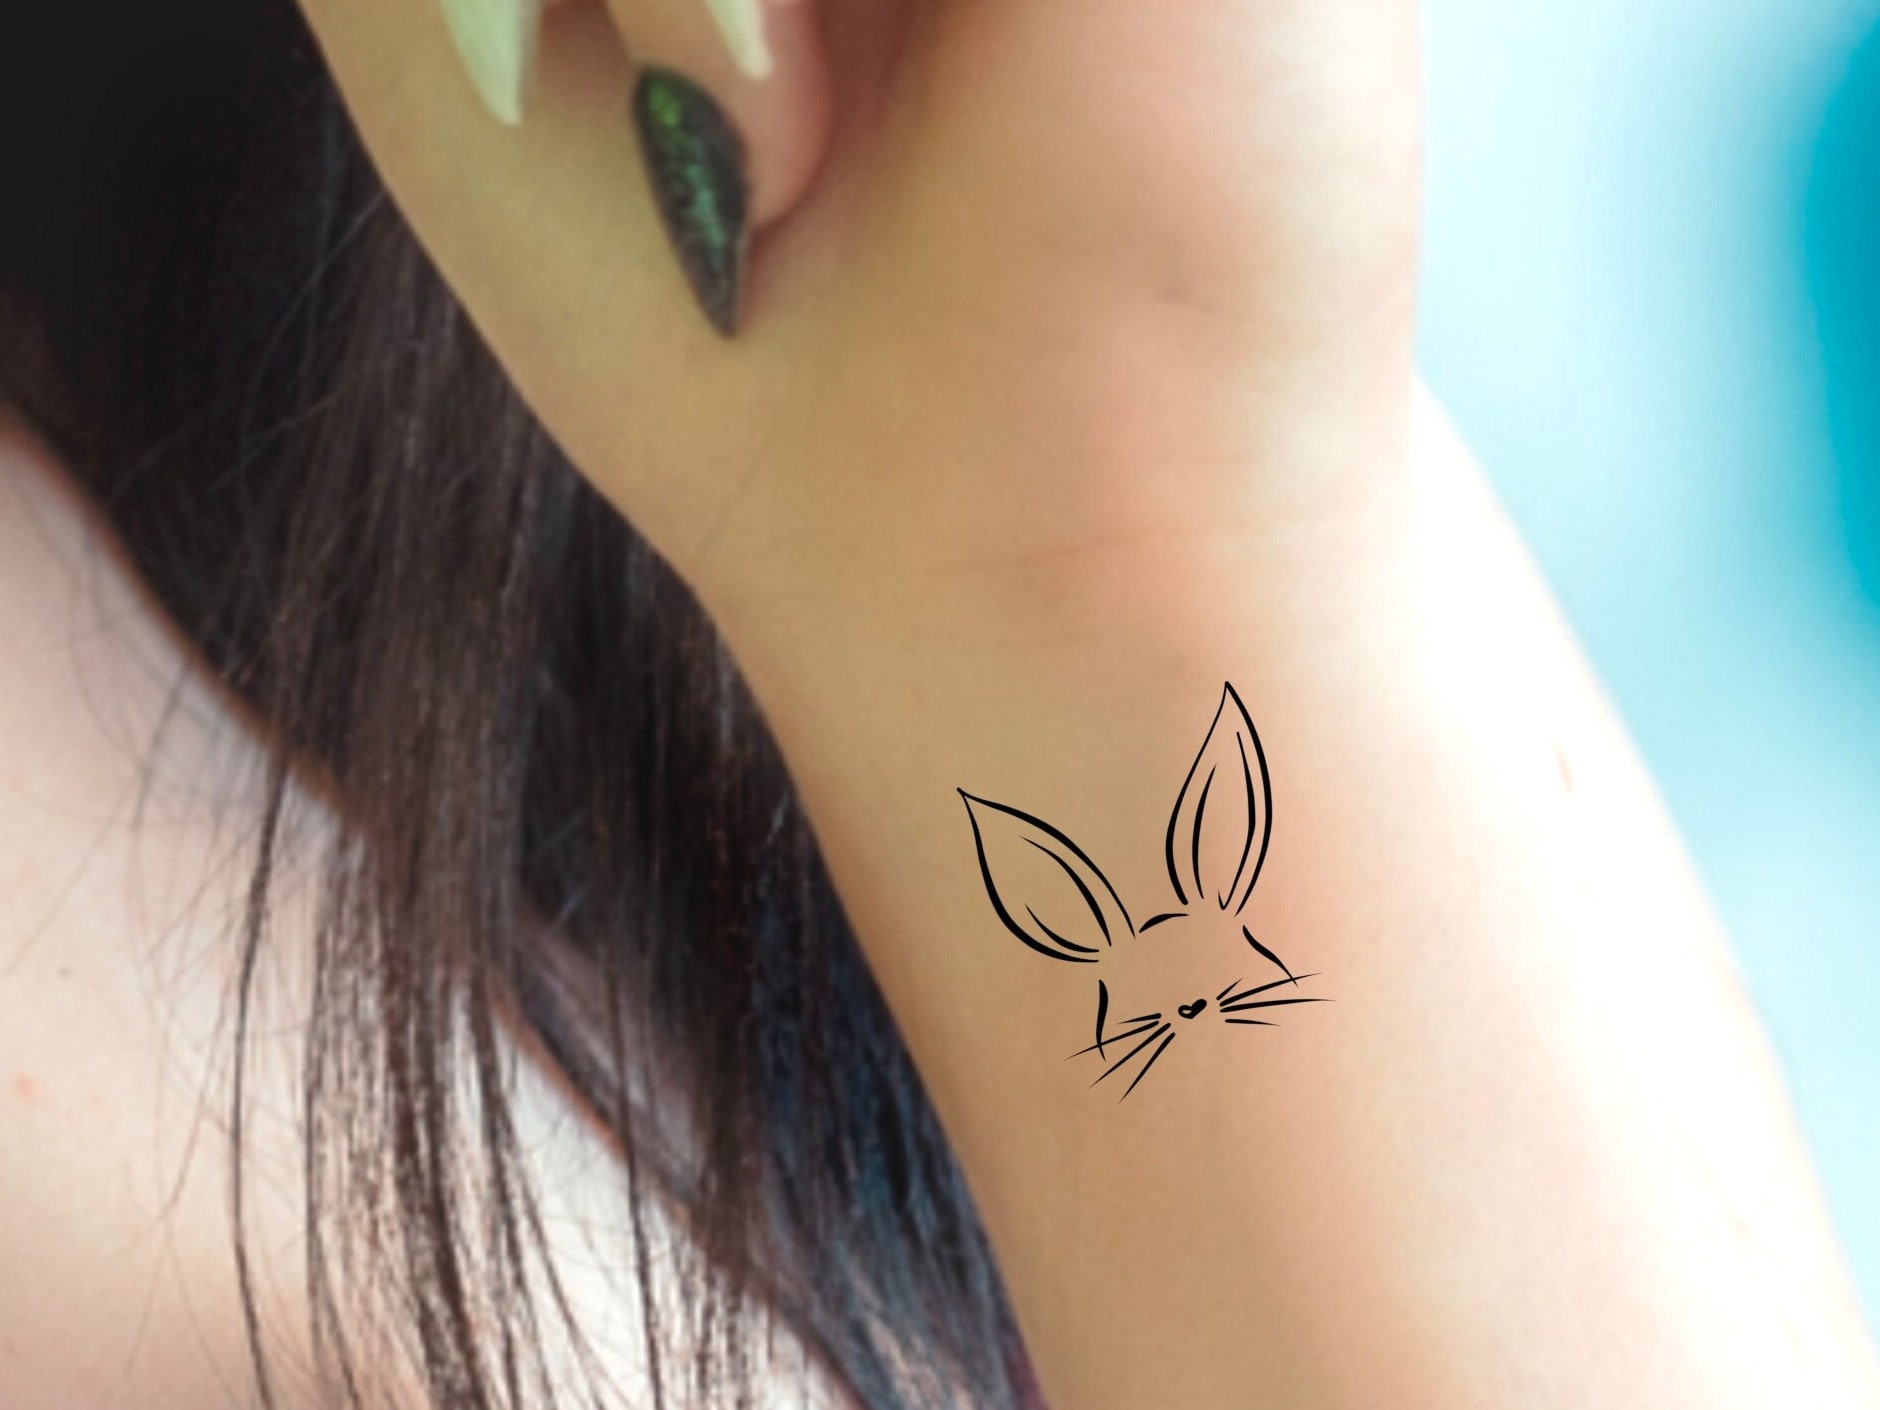 Cute Rabbit Tattoo Stickers Cartoon Kawaii Animal Tattoos Girls Ankle Wrist  Fake Tattoos Waterproof Pink Rabbit Temporary Tattoo - Temporary Tattoos -  AliExpress